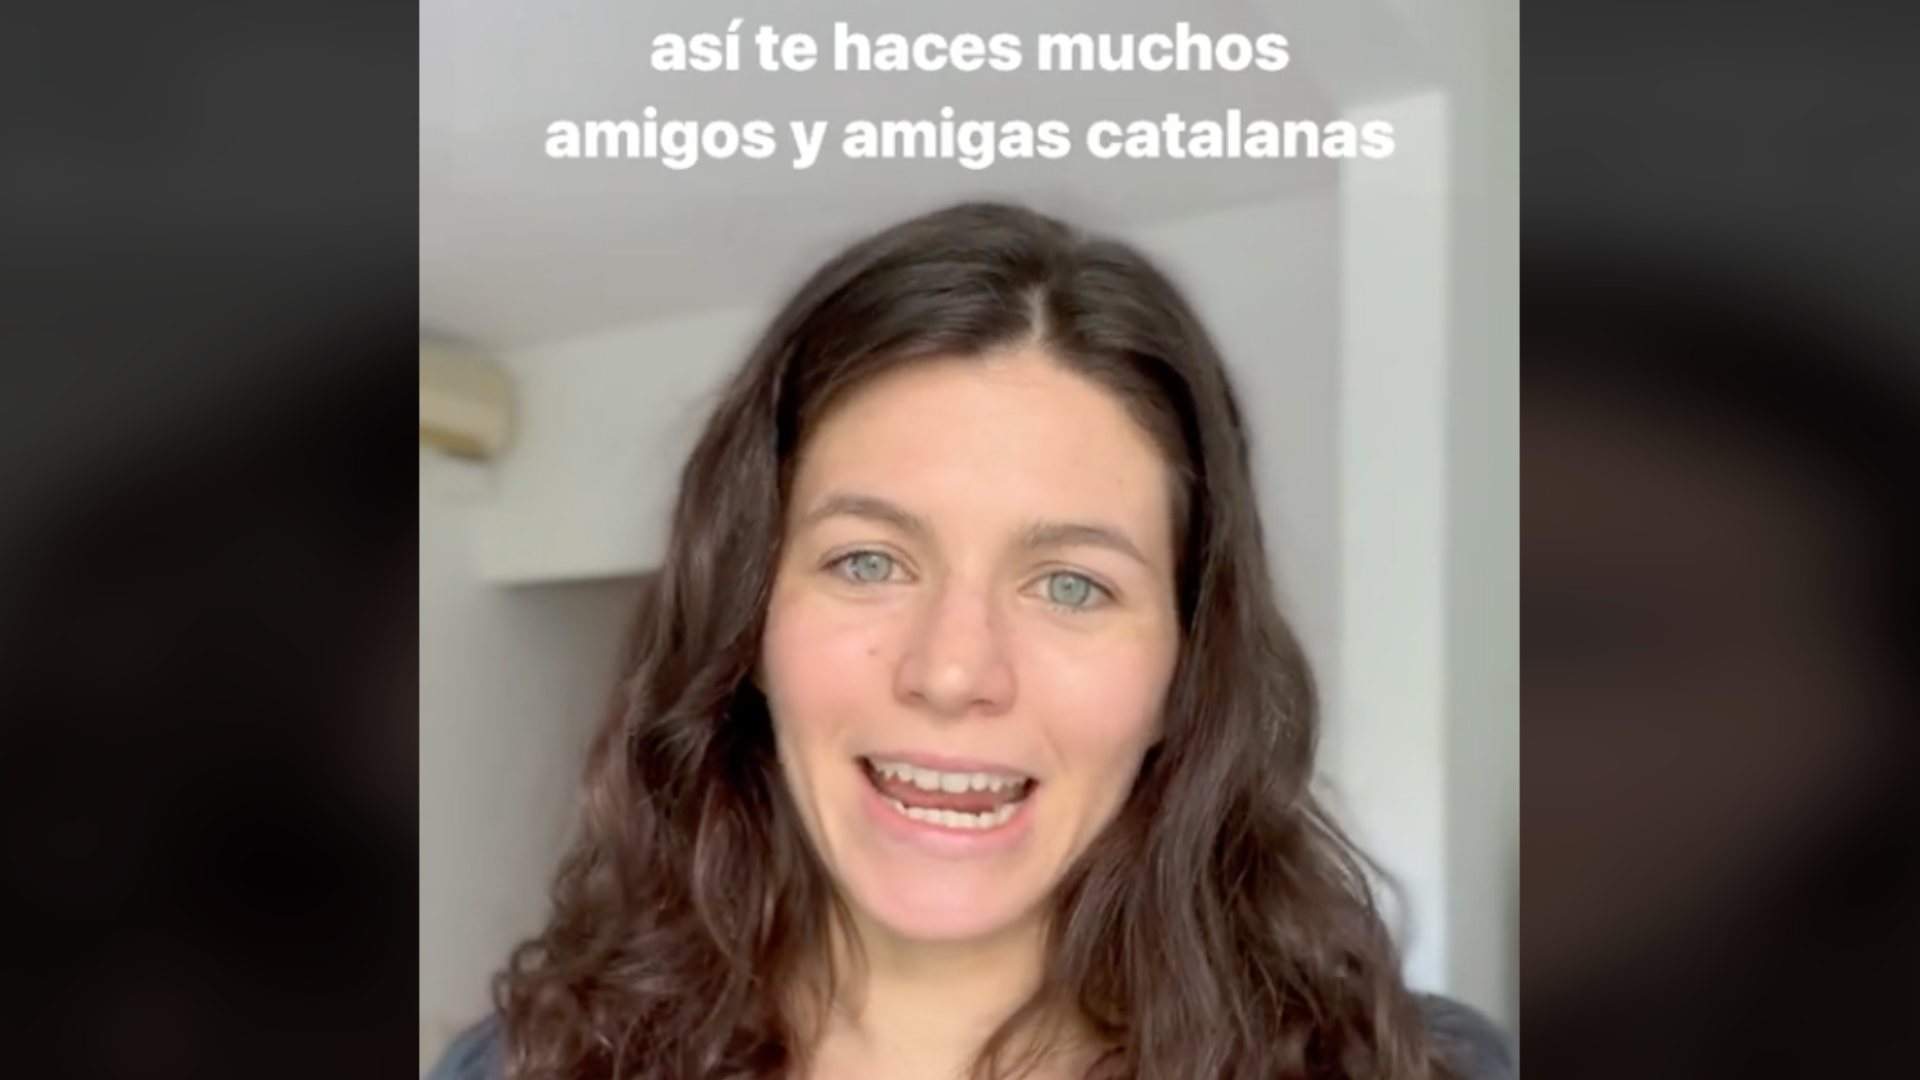 Una argentina explica las razones por las que ha aprendido catalán y emociona a TikTok